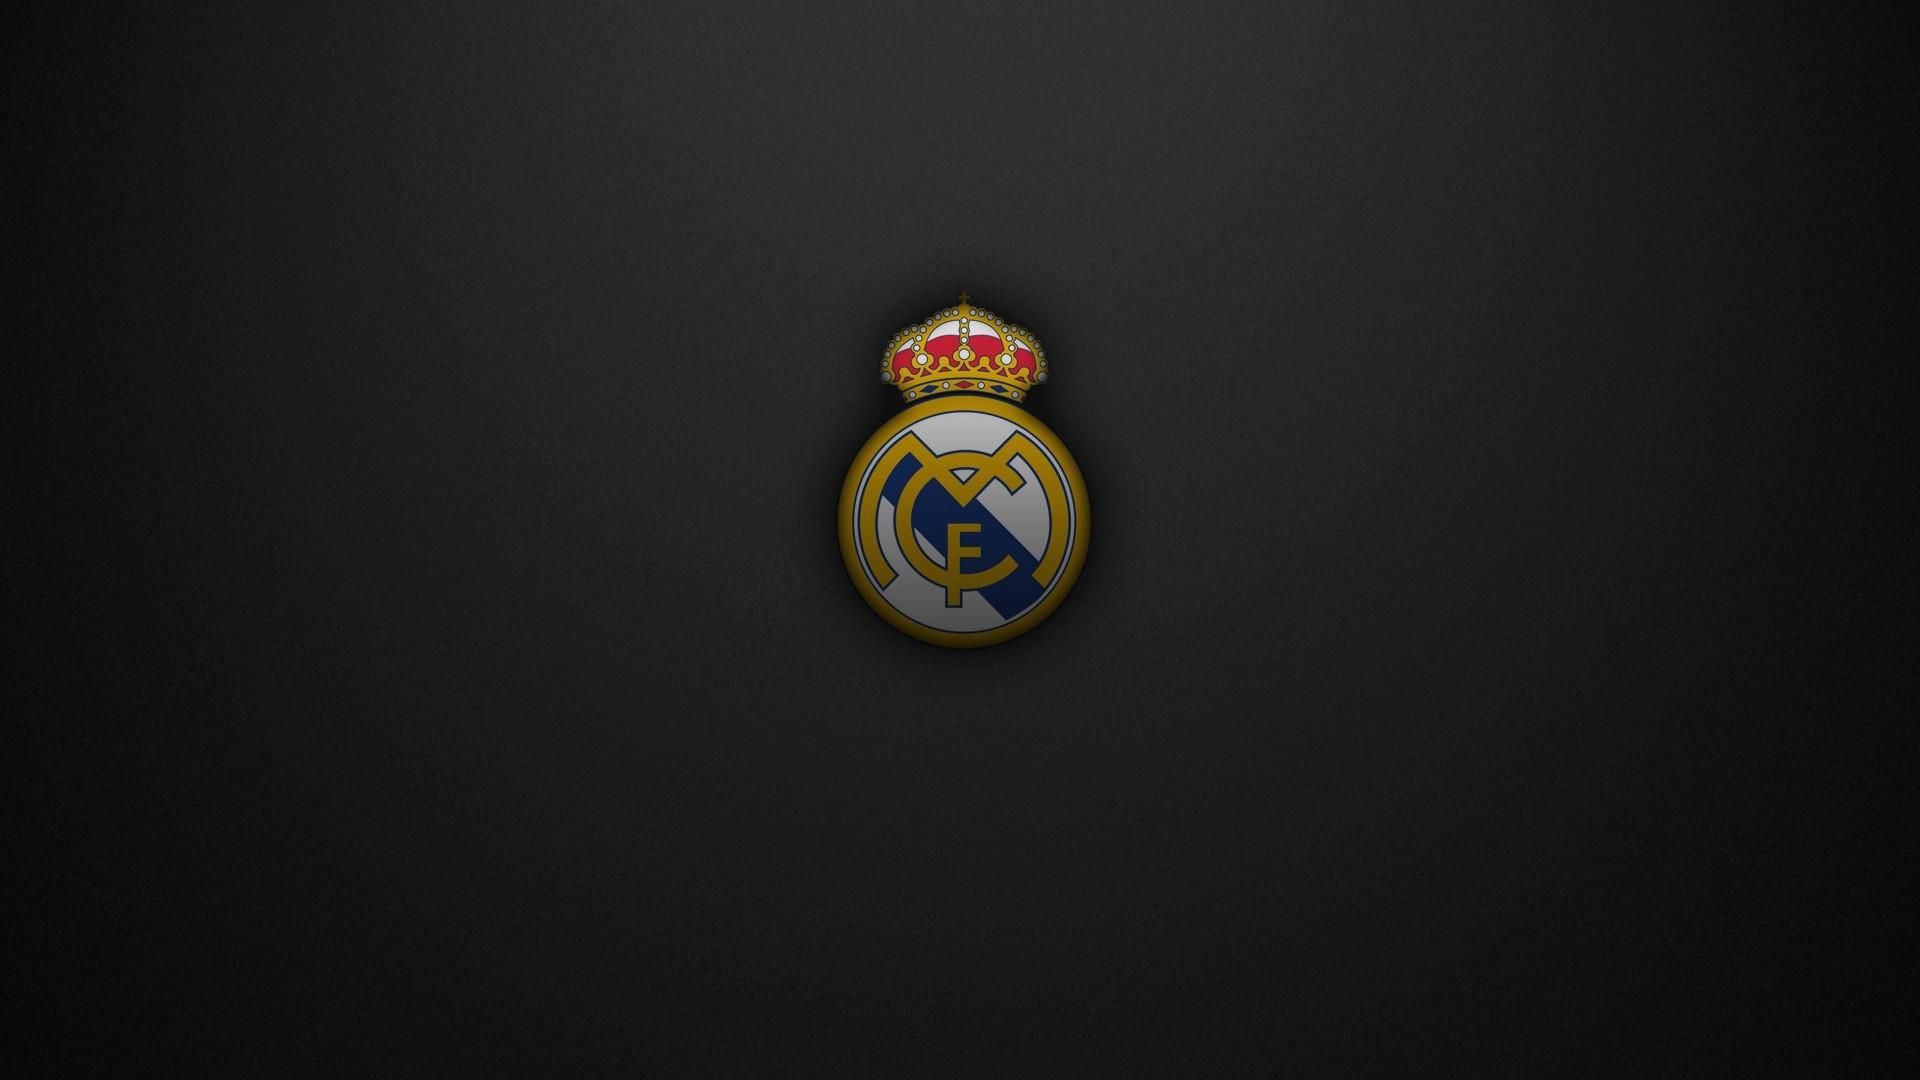 Wallpapers Hd De Futbol - Real Madrid , HD Wallpaper & Backgrounds